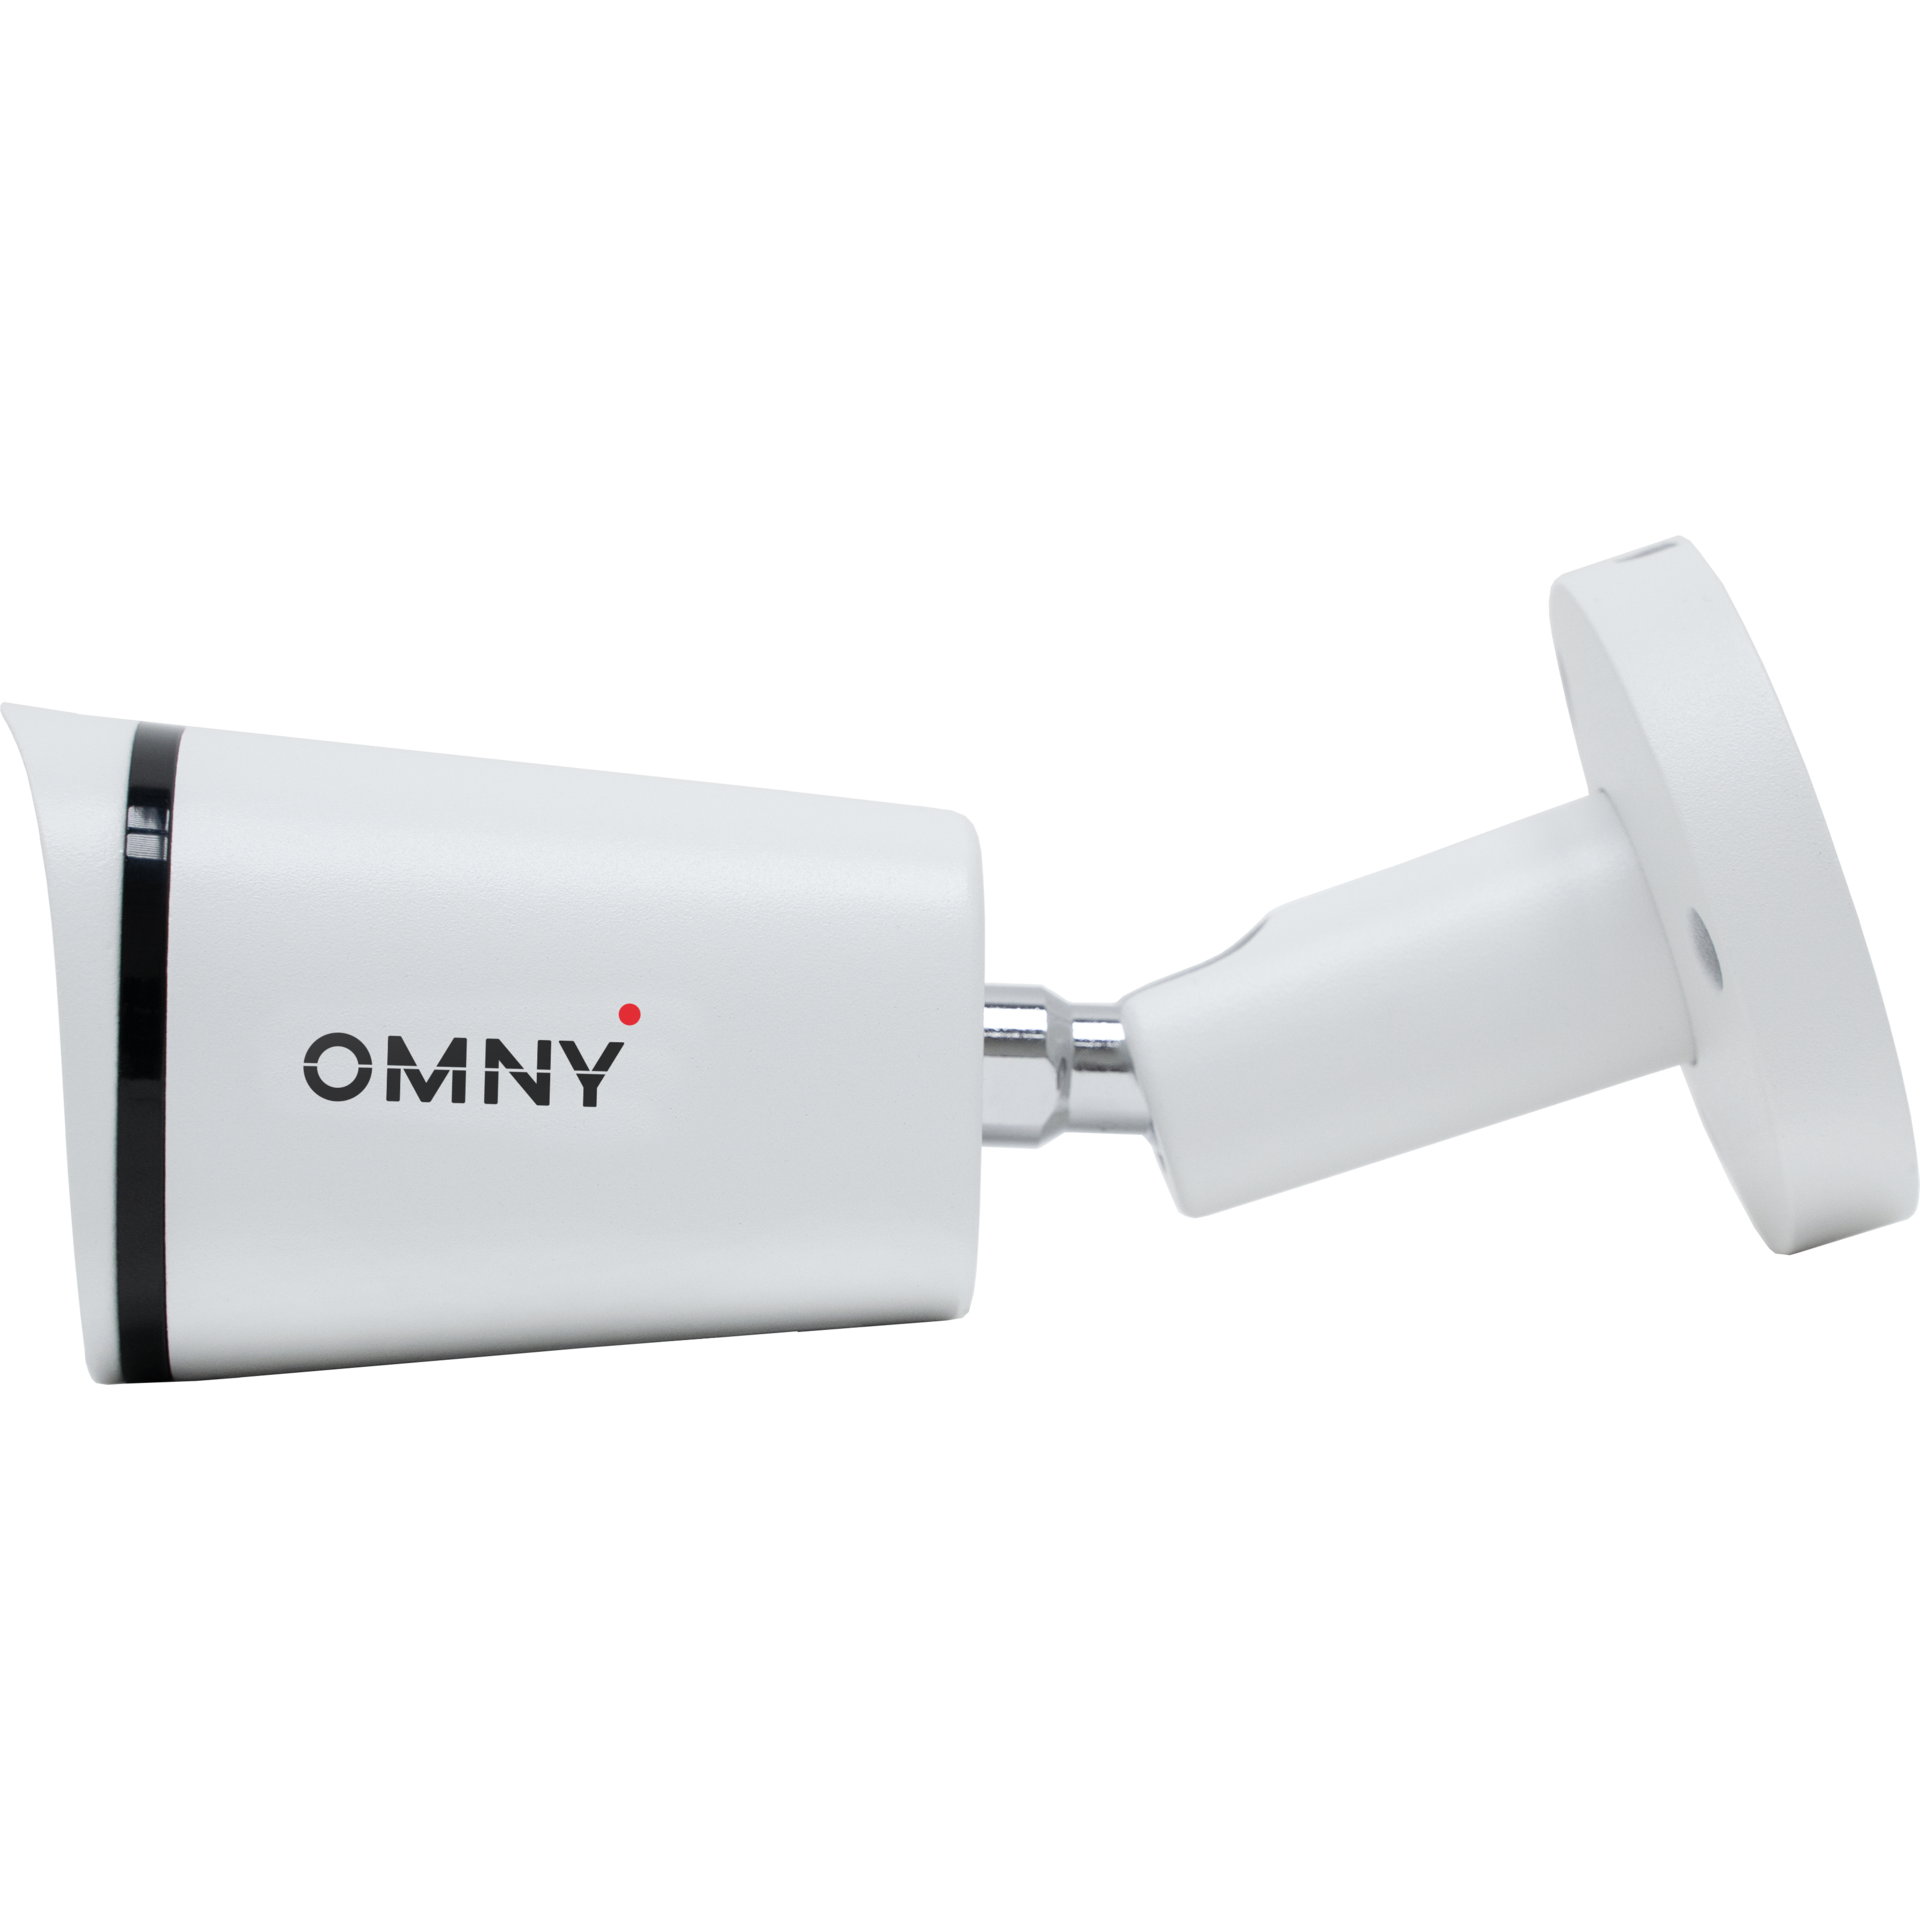 IP камера буллет 2Мп OMNY BASE miniBullet2Т-U v2 со встроенным микрофоном